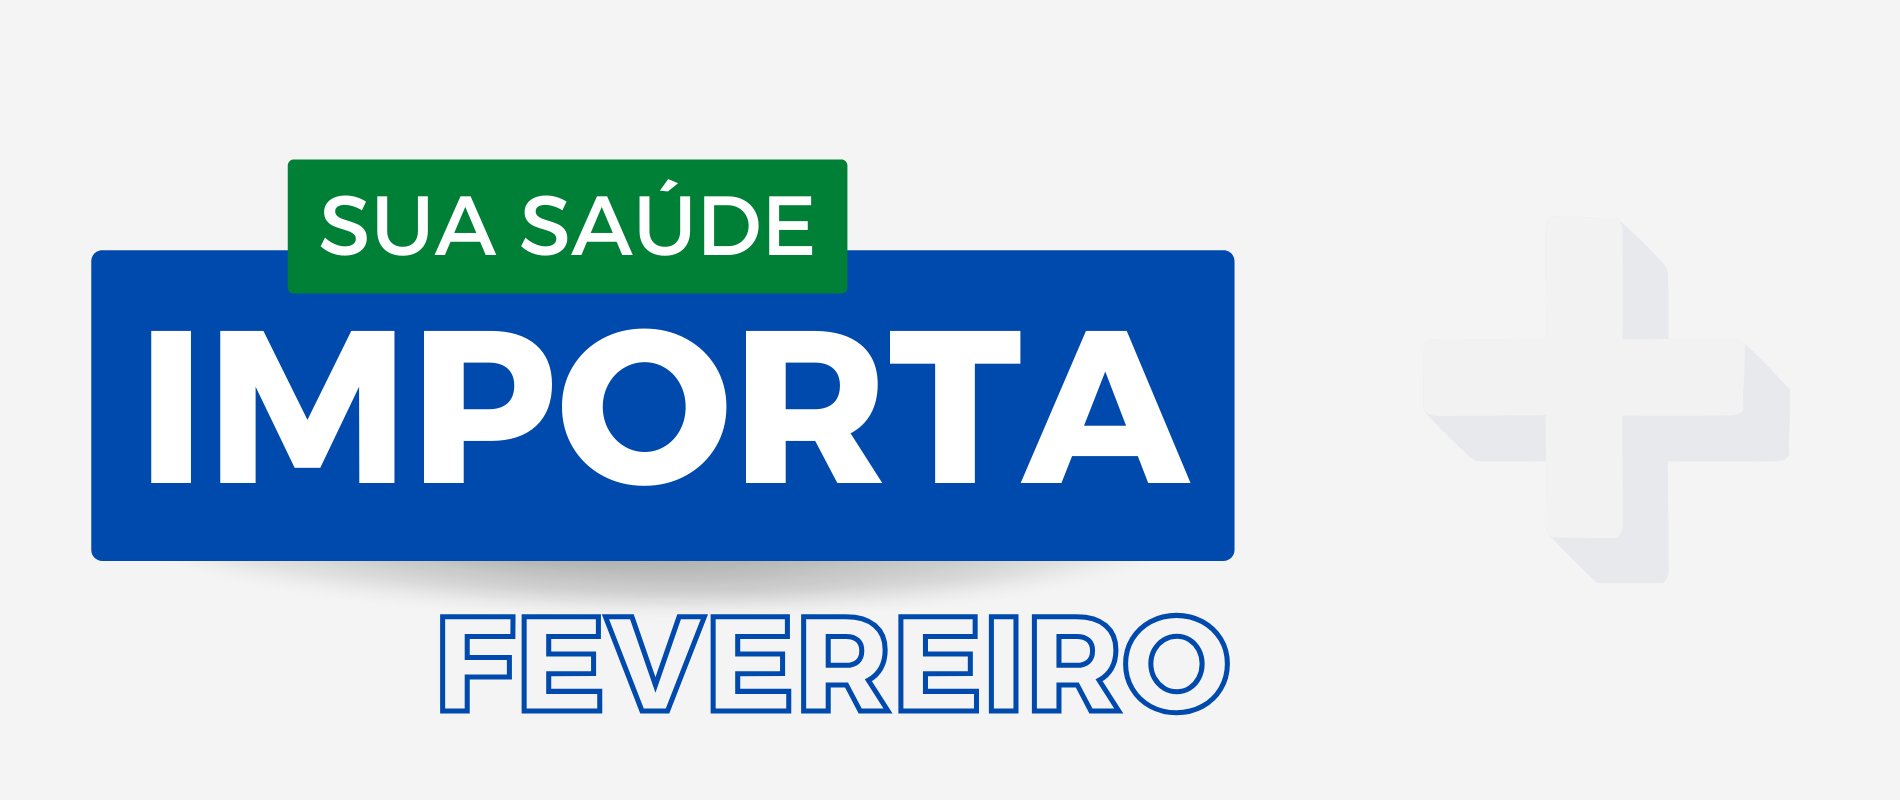 SUA SAÚDE IMPORTA: FEVEREIRO